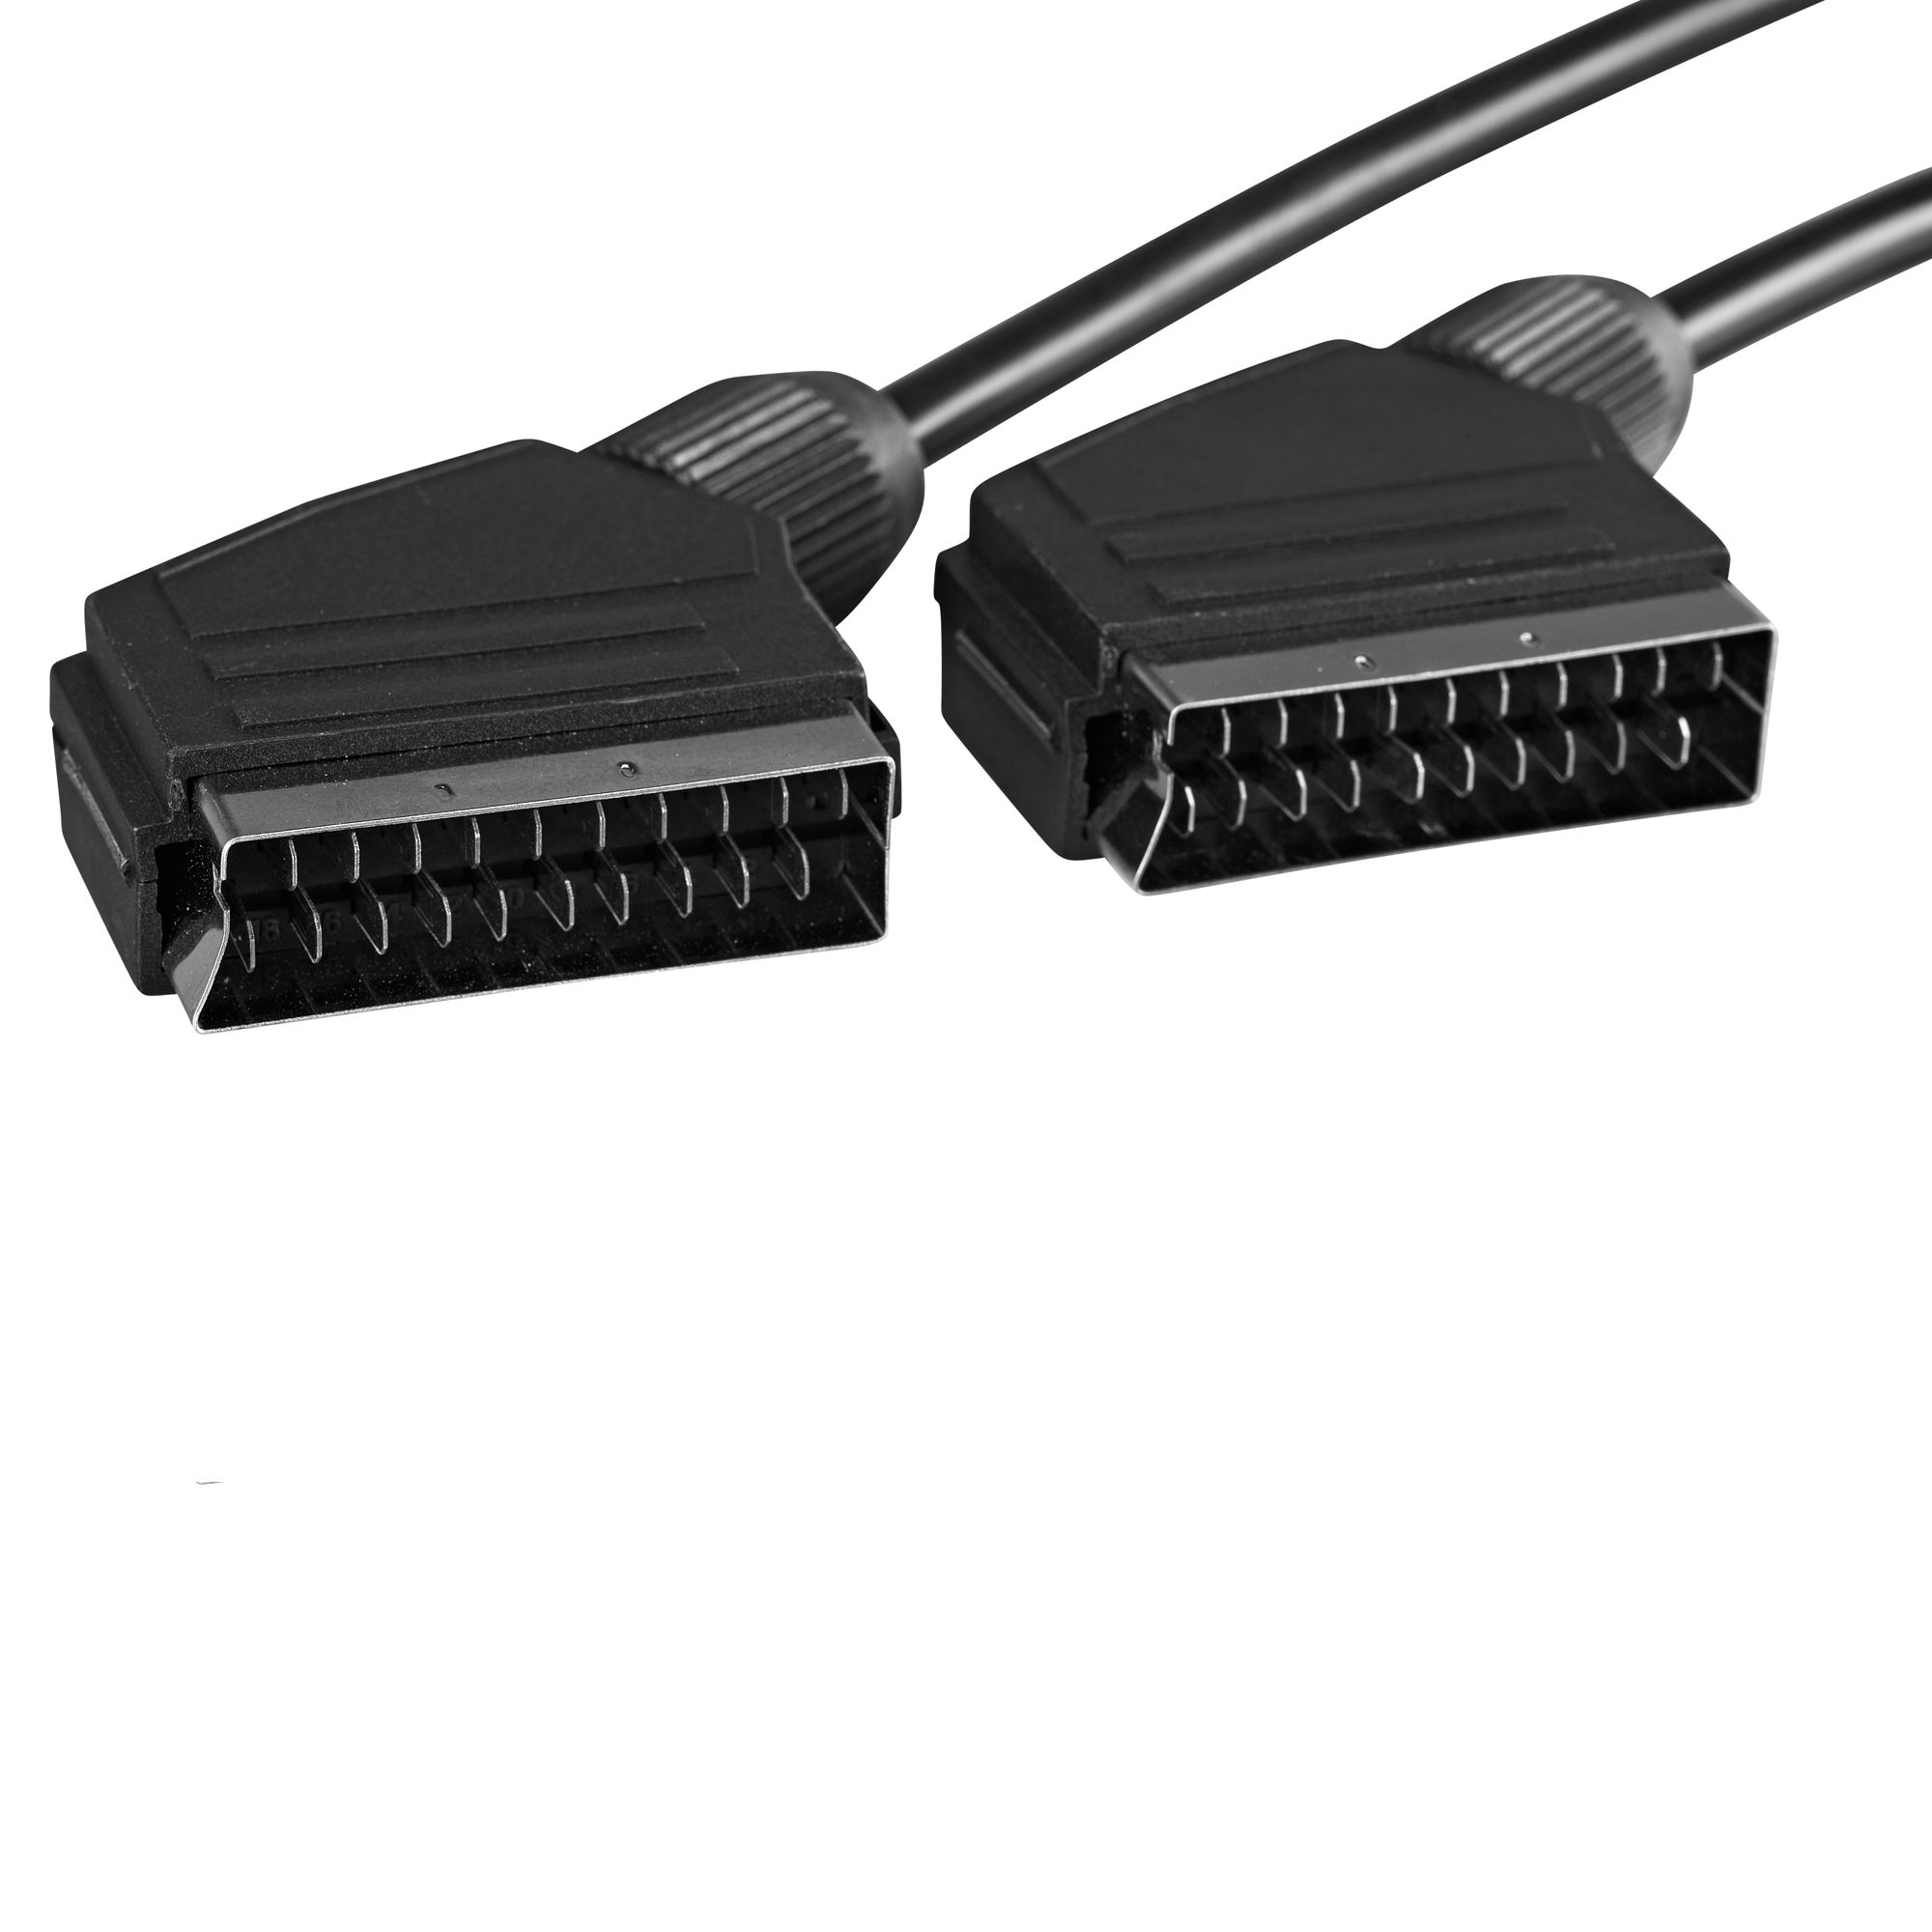 Schwaiger SCART-Kabel schwarz 21-pol. 1,5 m